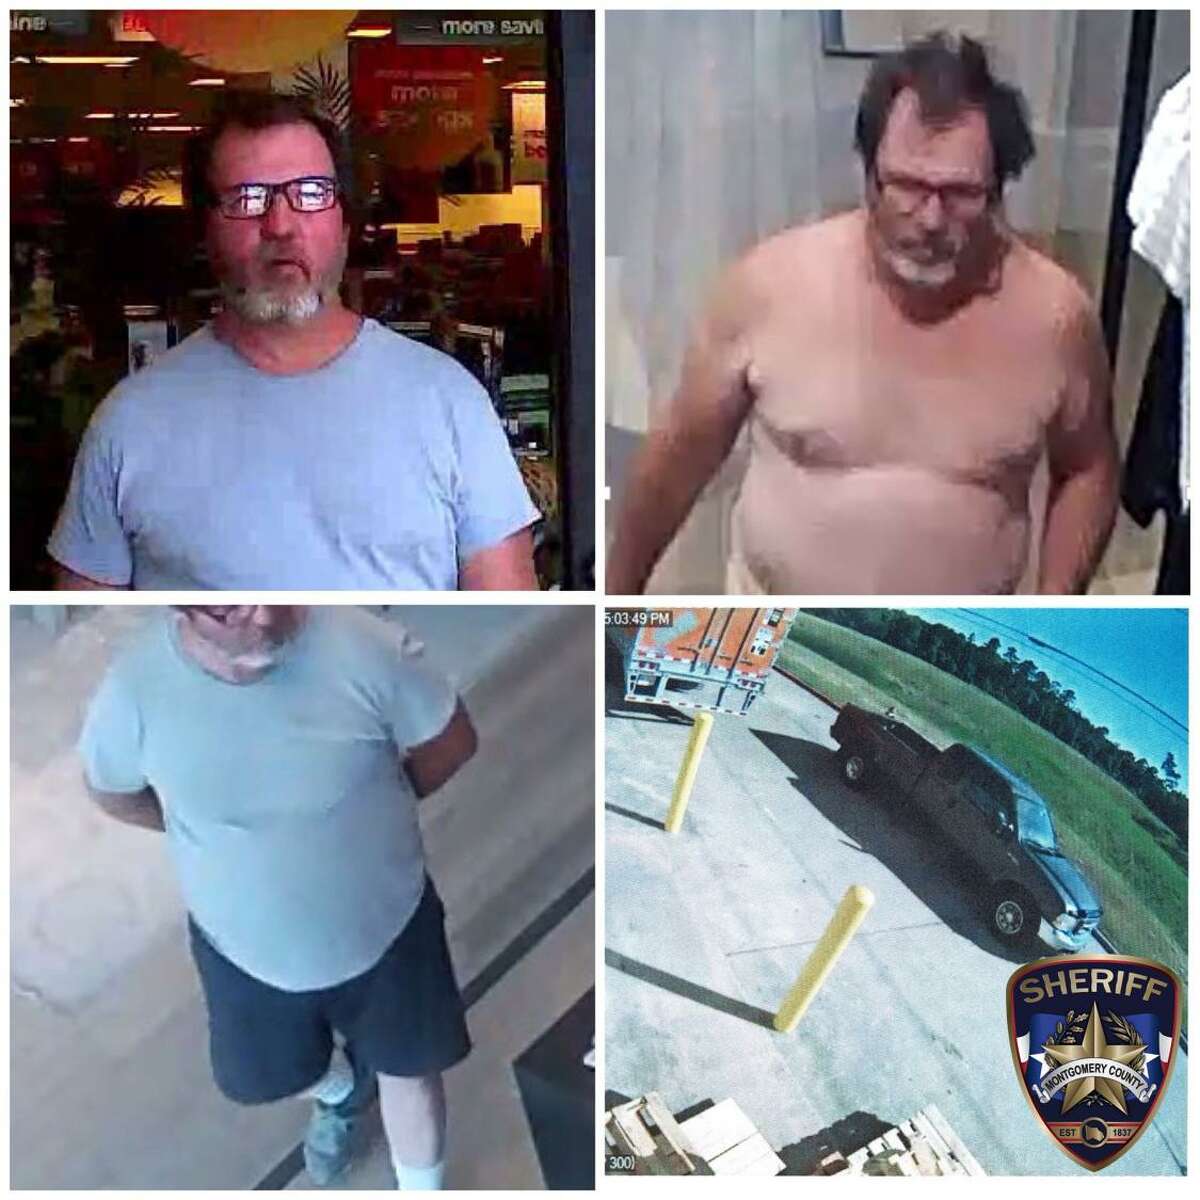 Police: Naked man seen inside Wal-Mart arrested 